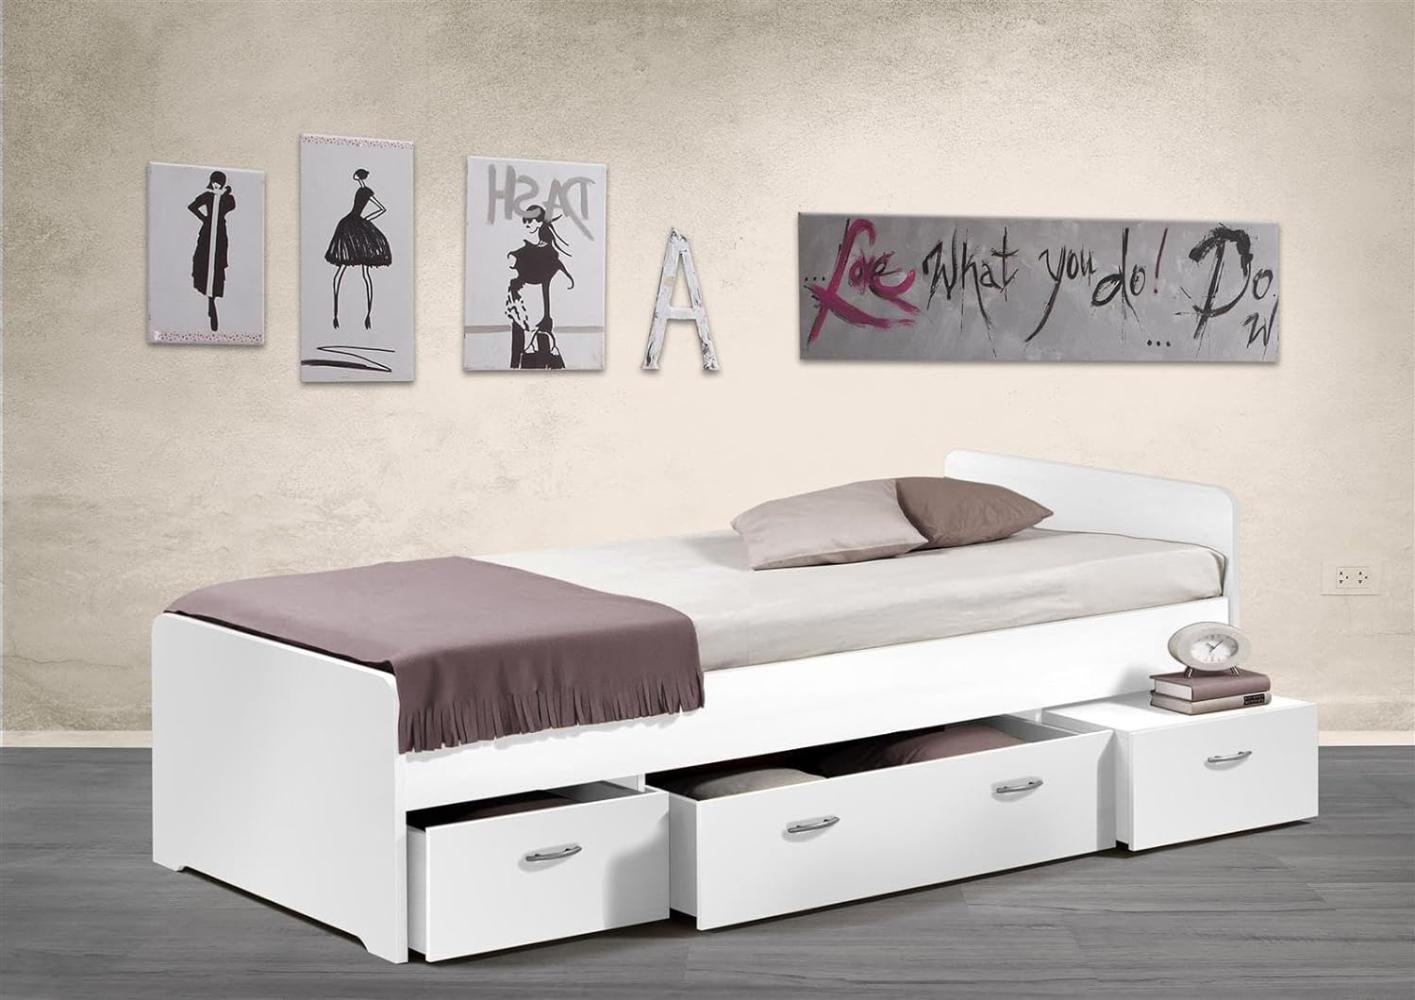 Bradford Modernes Einzelbett mit 3X Schubkästen 90 x 200 cm - Praktisches Jugendzimmer Kojenbett in Weiß - 95 x 66 x 204 cm (B/H/T) Bild 1